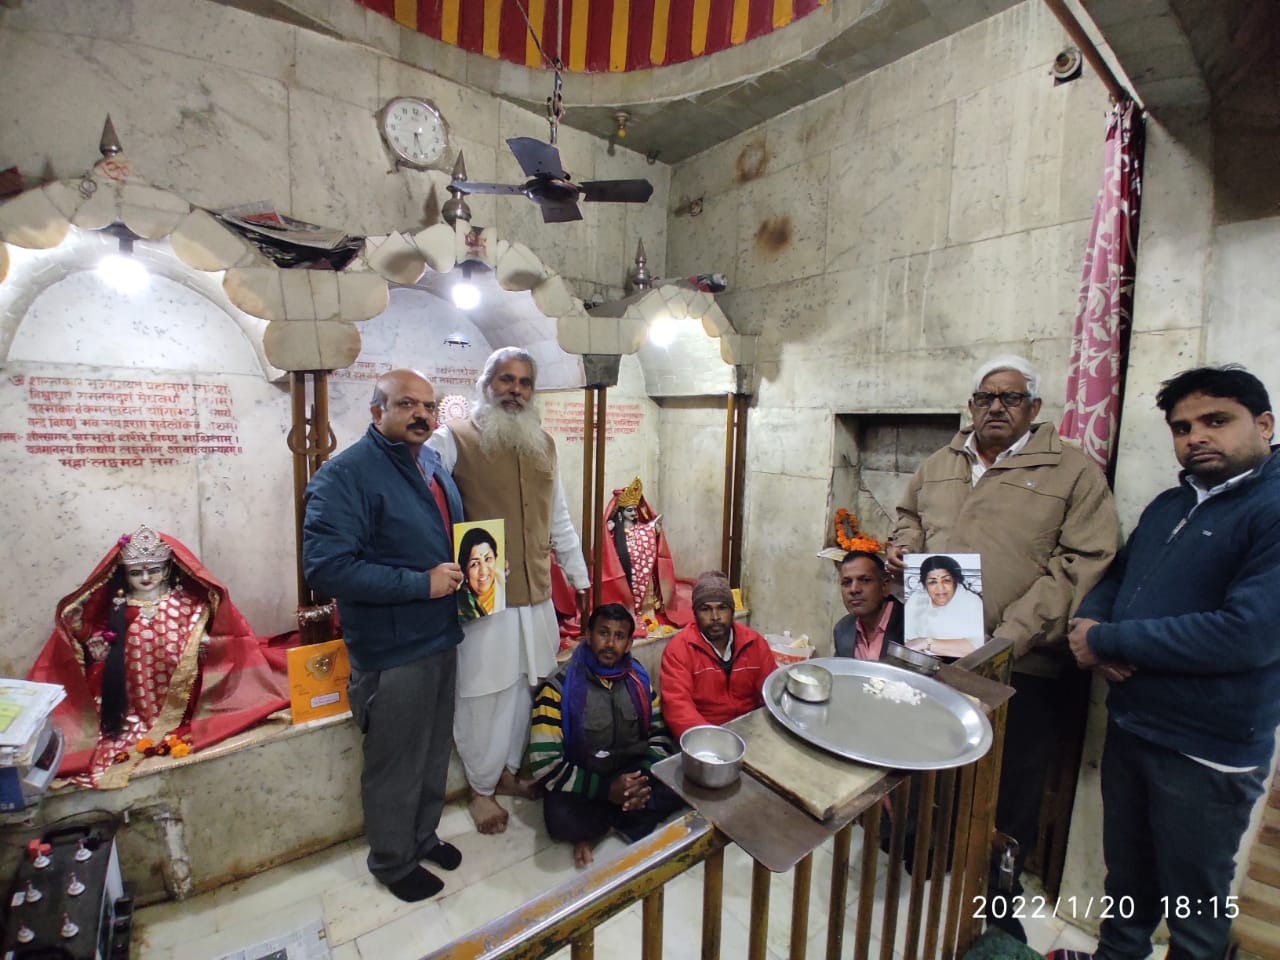 स्वर कोकिला लता मंगेशकर के लिए मंदिर—मस्जिद में प्रार्थना दुआ के लिए उठ रहे हाथ